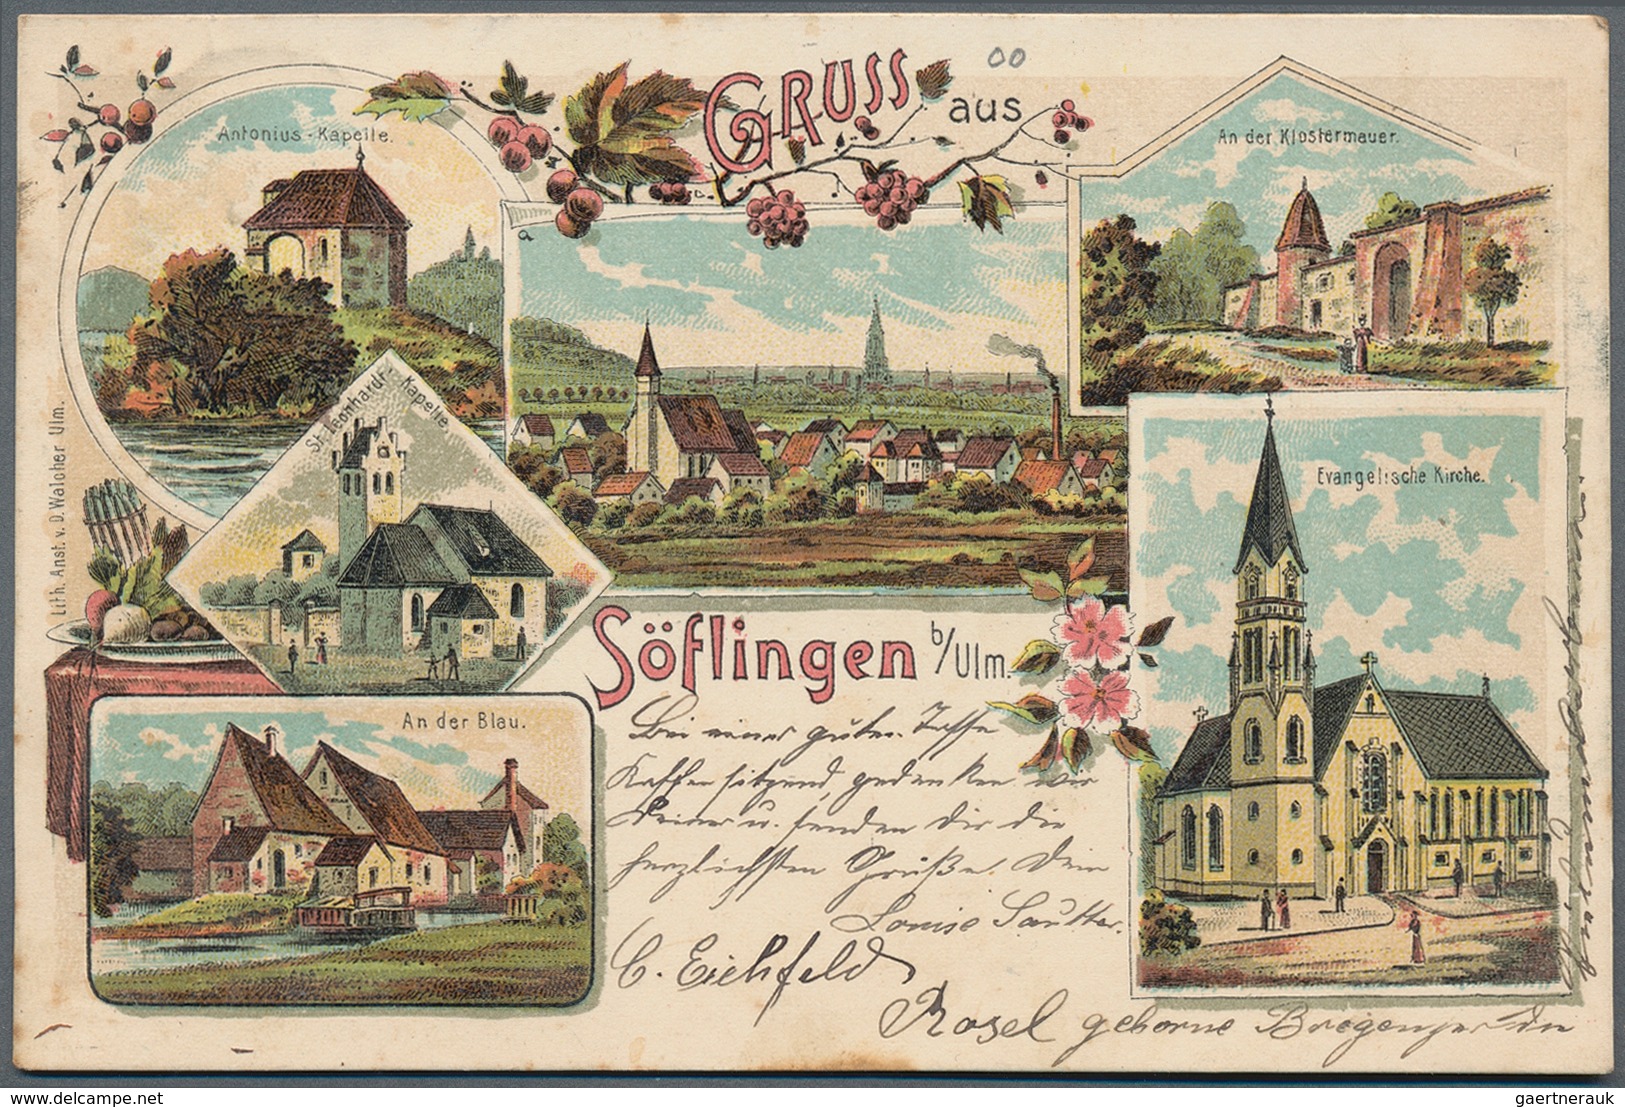 Ansichtskarten: Baden-Württemberg: ULM (alte PLZ 7900), eine liebevoll zusammengetragene Heimatsamml